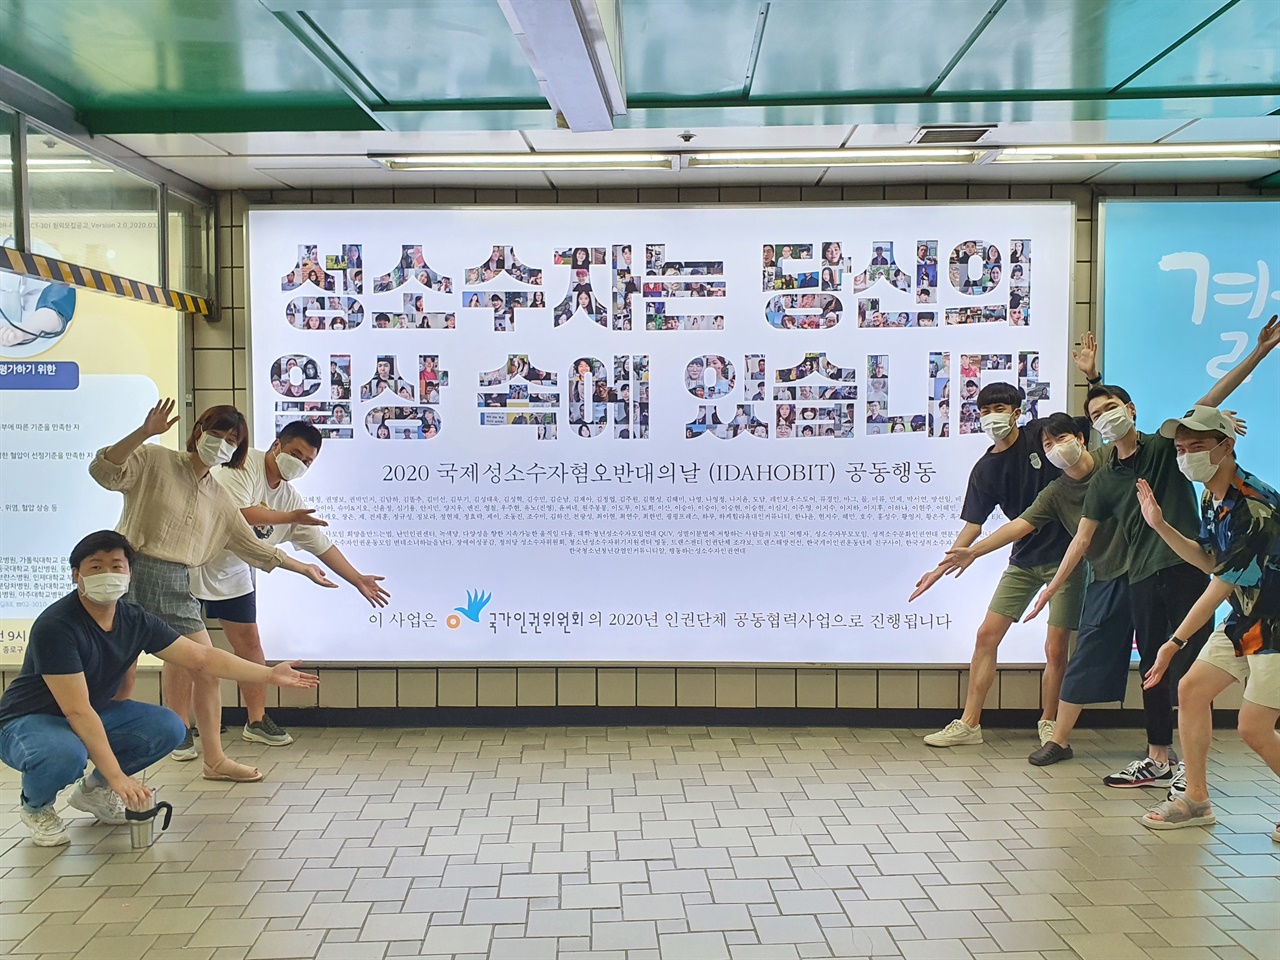 광고 앞에서 인증활동을 하는 무지개행동 활동가들